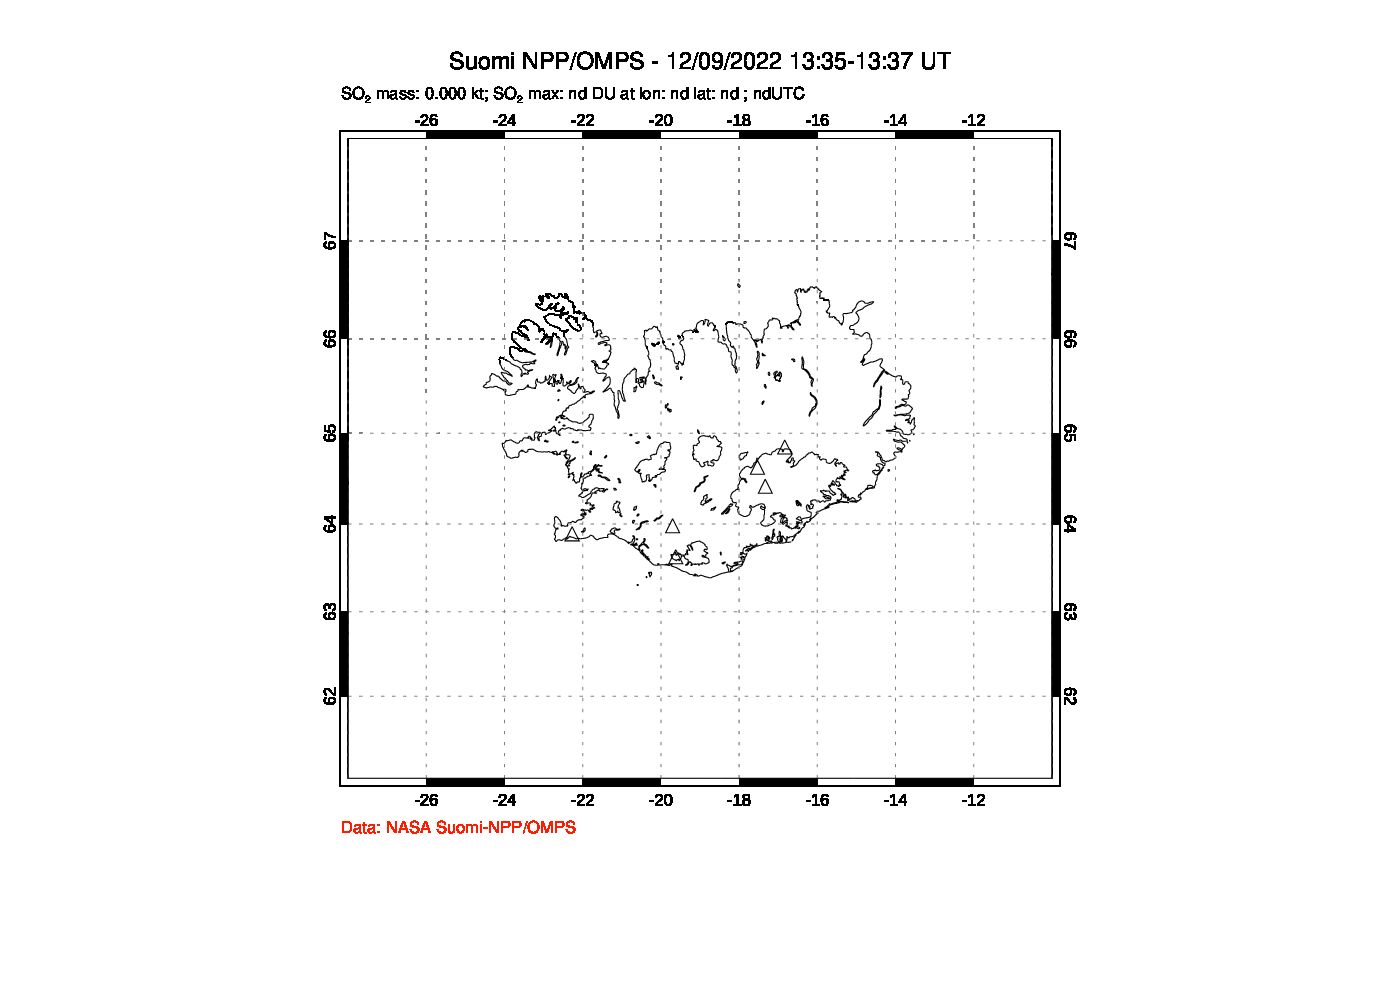 A sulfur dioxide image over Iceland on Dec 09, 2022.